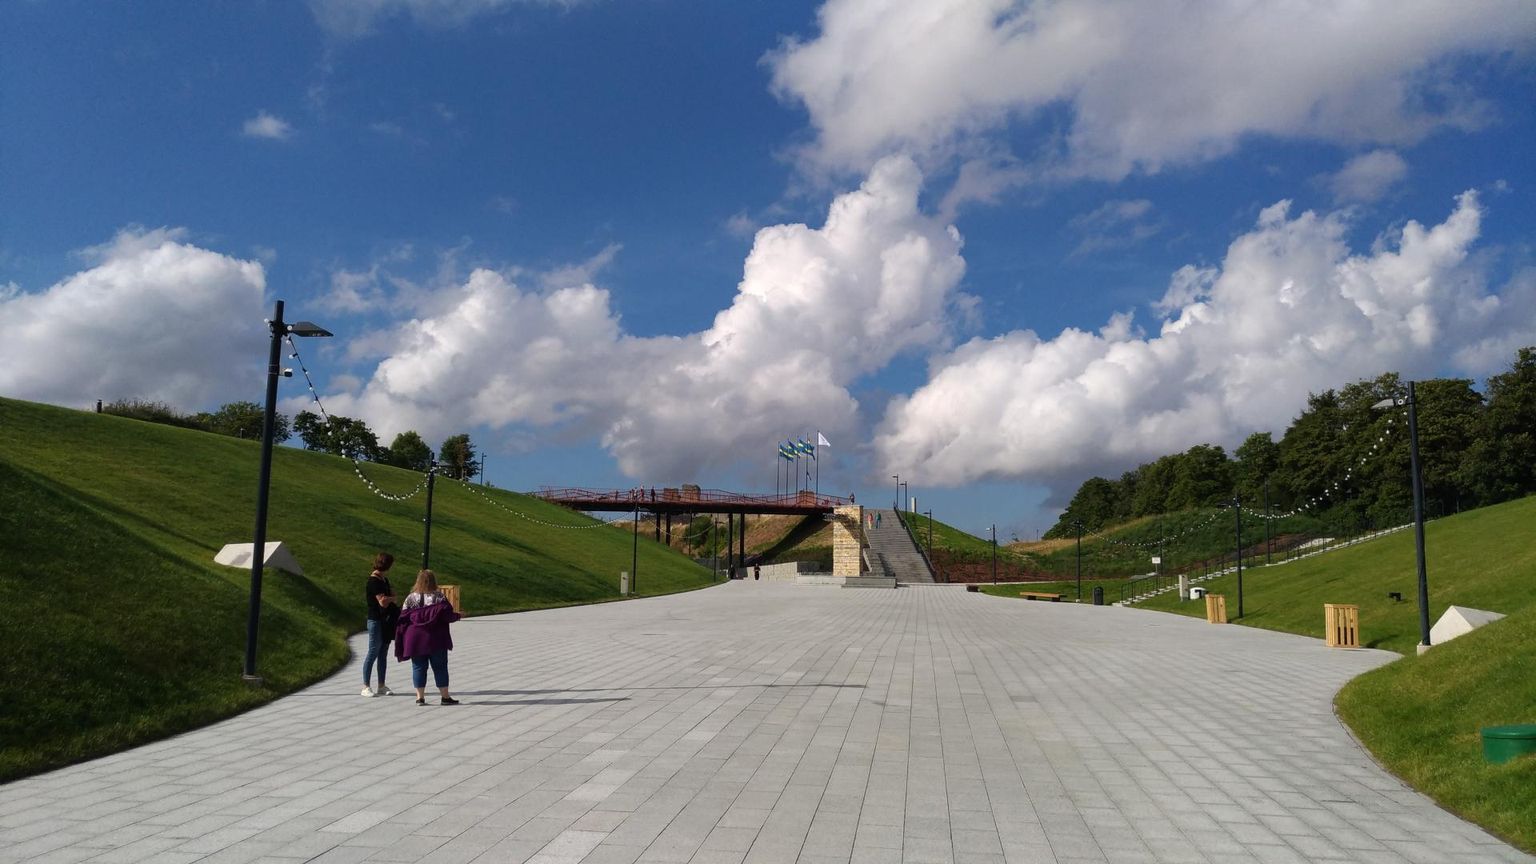 Möödunud aastal valminud Rakvere Vallimäe vabaõhukompleks on turistidele omaette atraktsioon. Selle ehitust kaasrahastas Euroopa Regionaalarengu Fond ligi 2,5 miljoni euro ulatuses.